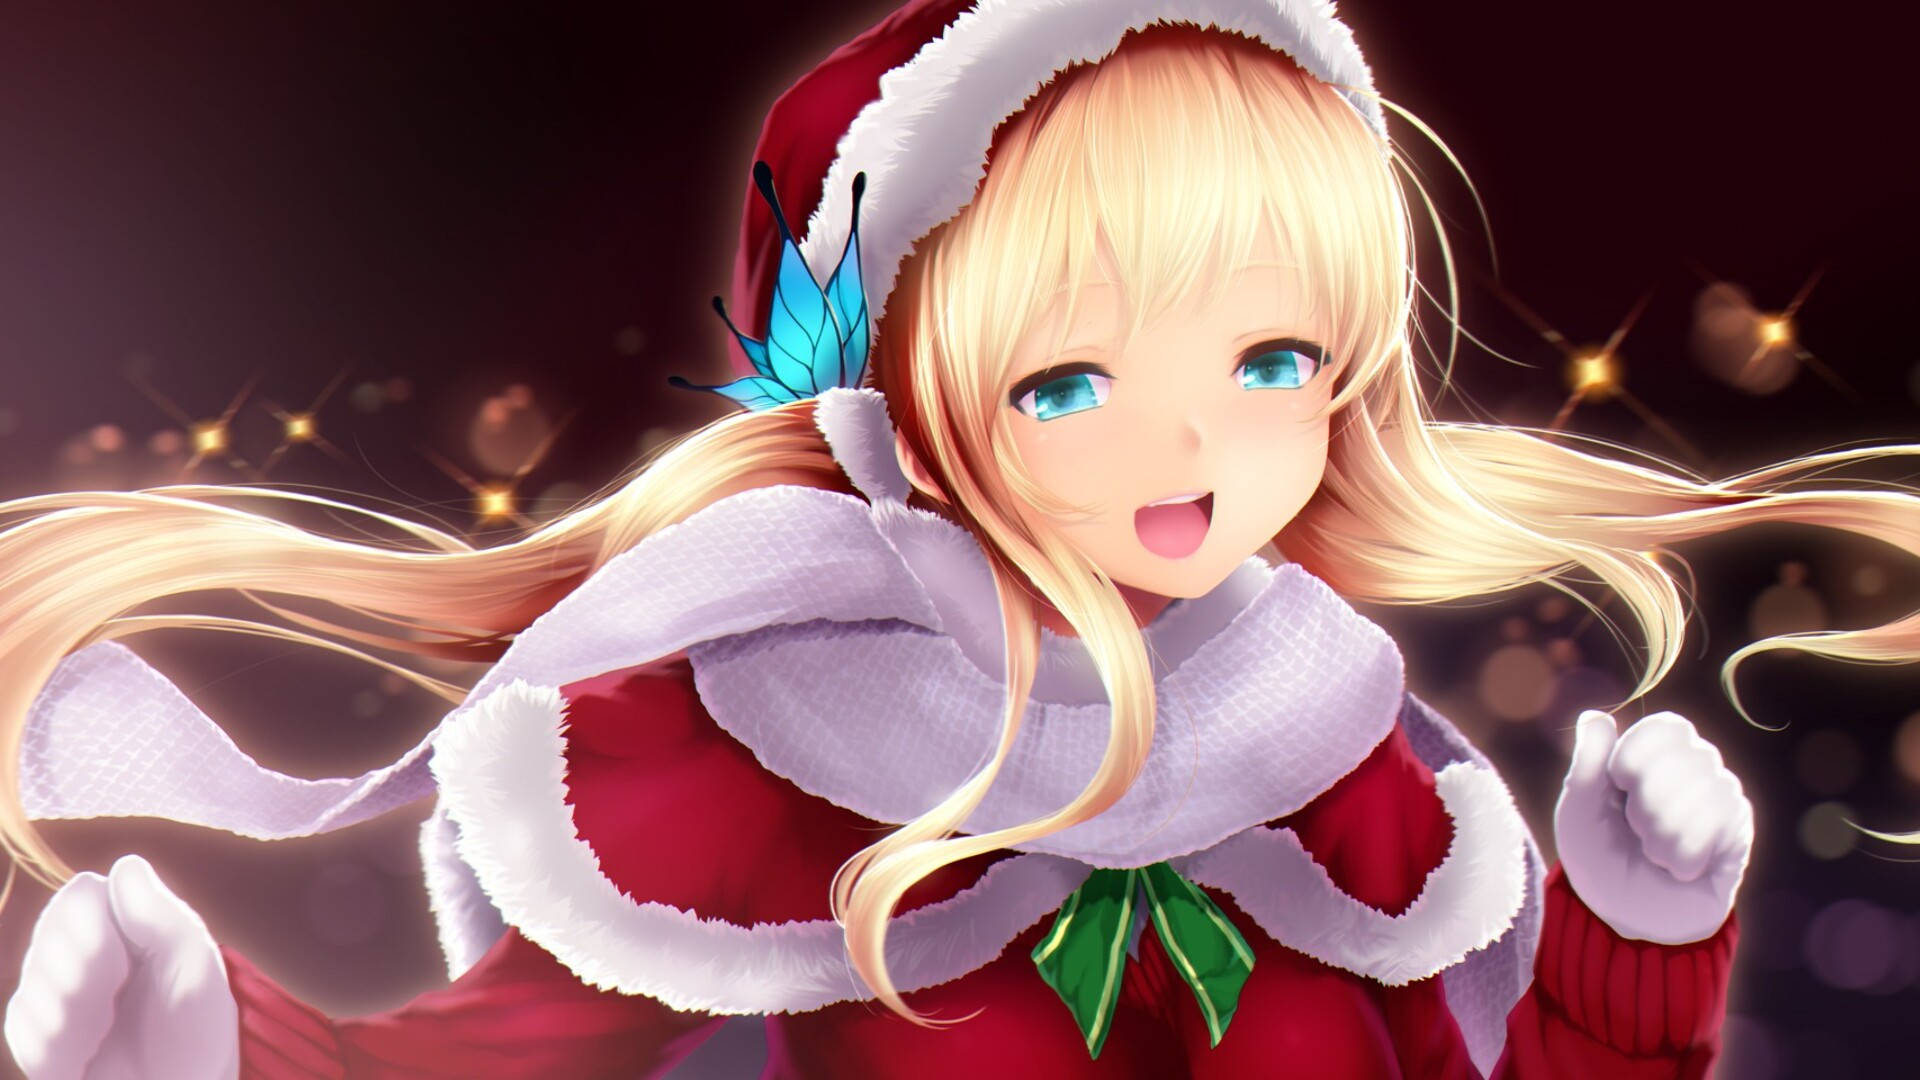 Blonde Girl Anime Christmas Digital Art Wallpaper